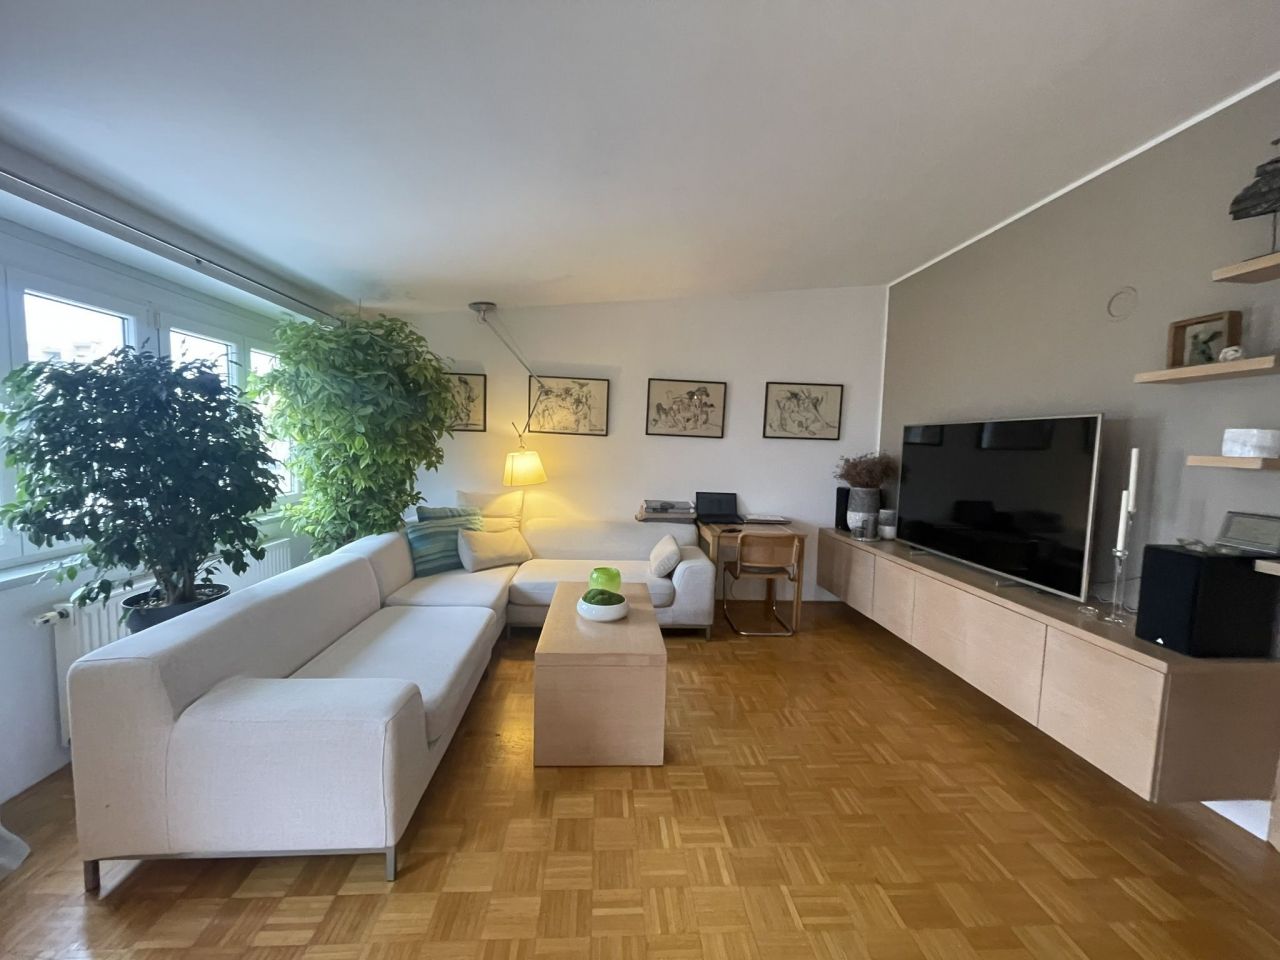 Apartment in Ljubljana, Slovenia, 132.6 sq.m - picture 1